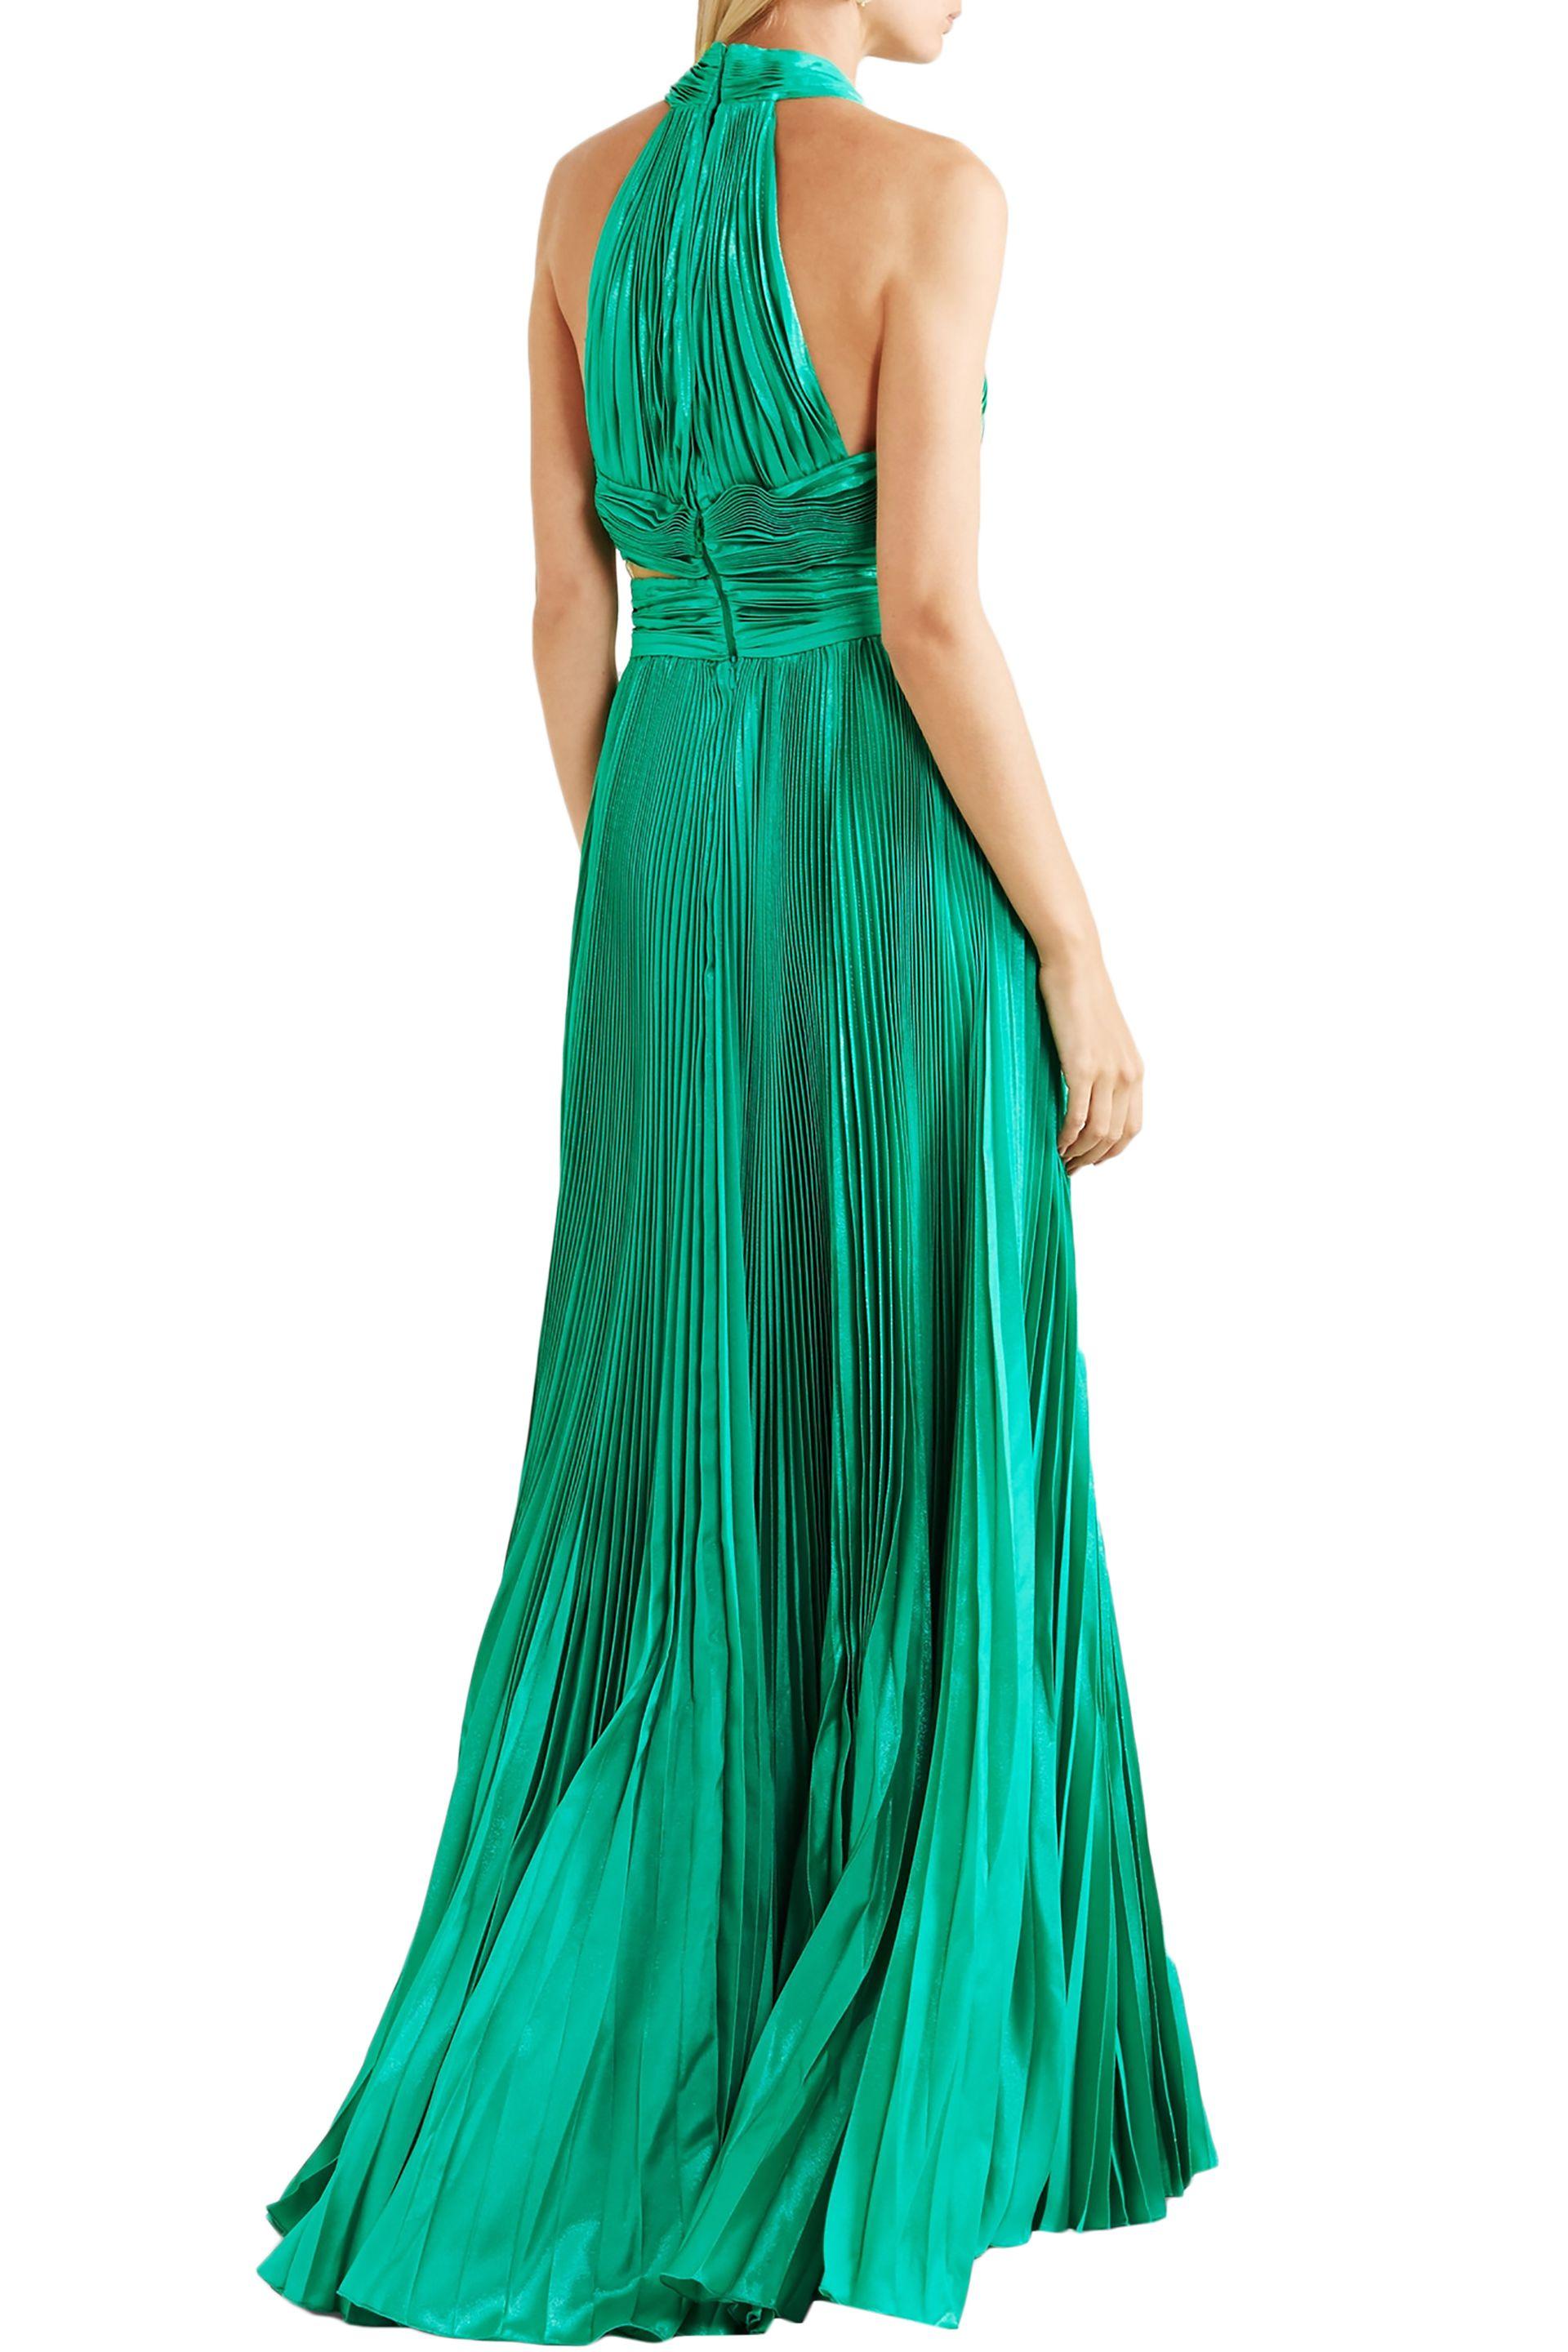 zuhair murad green dress